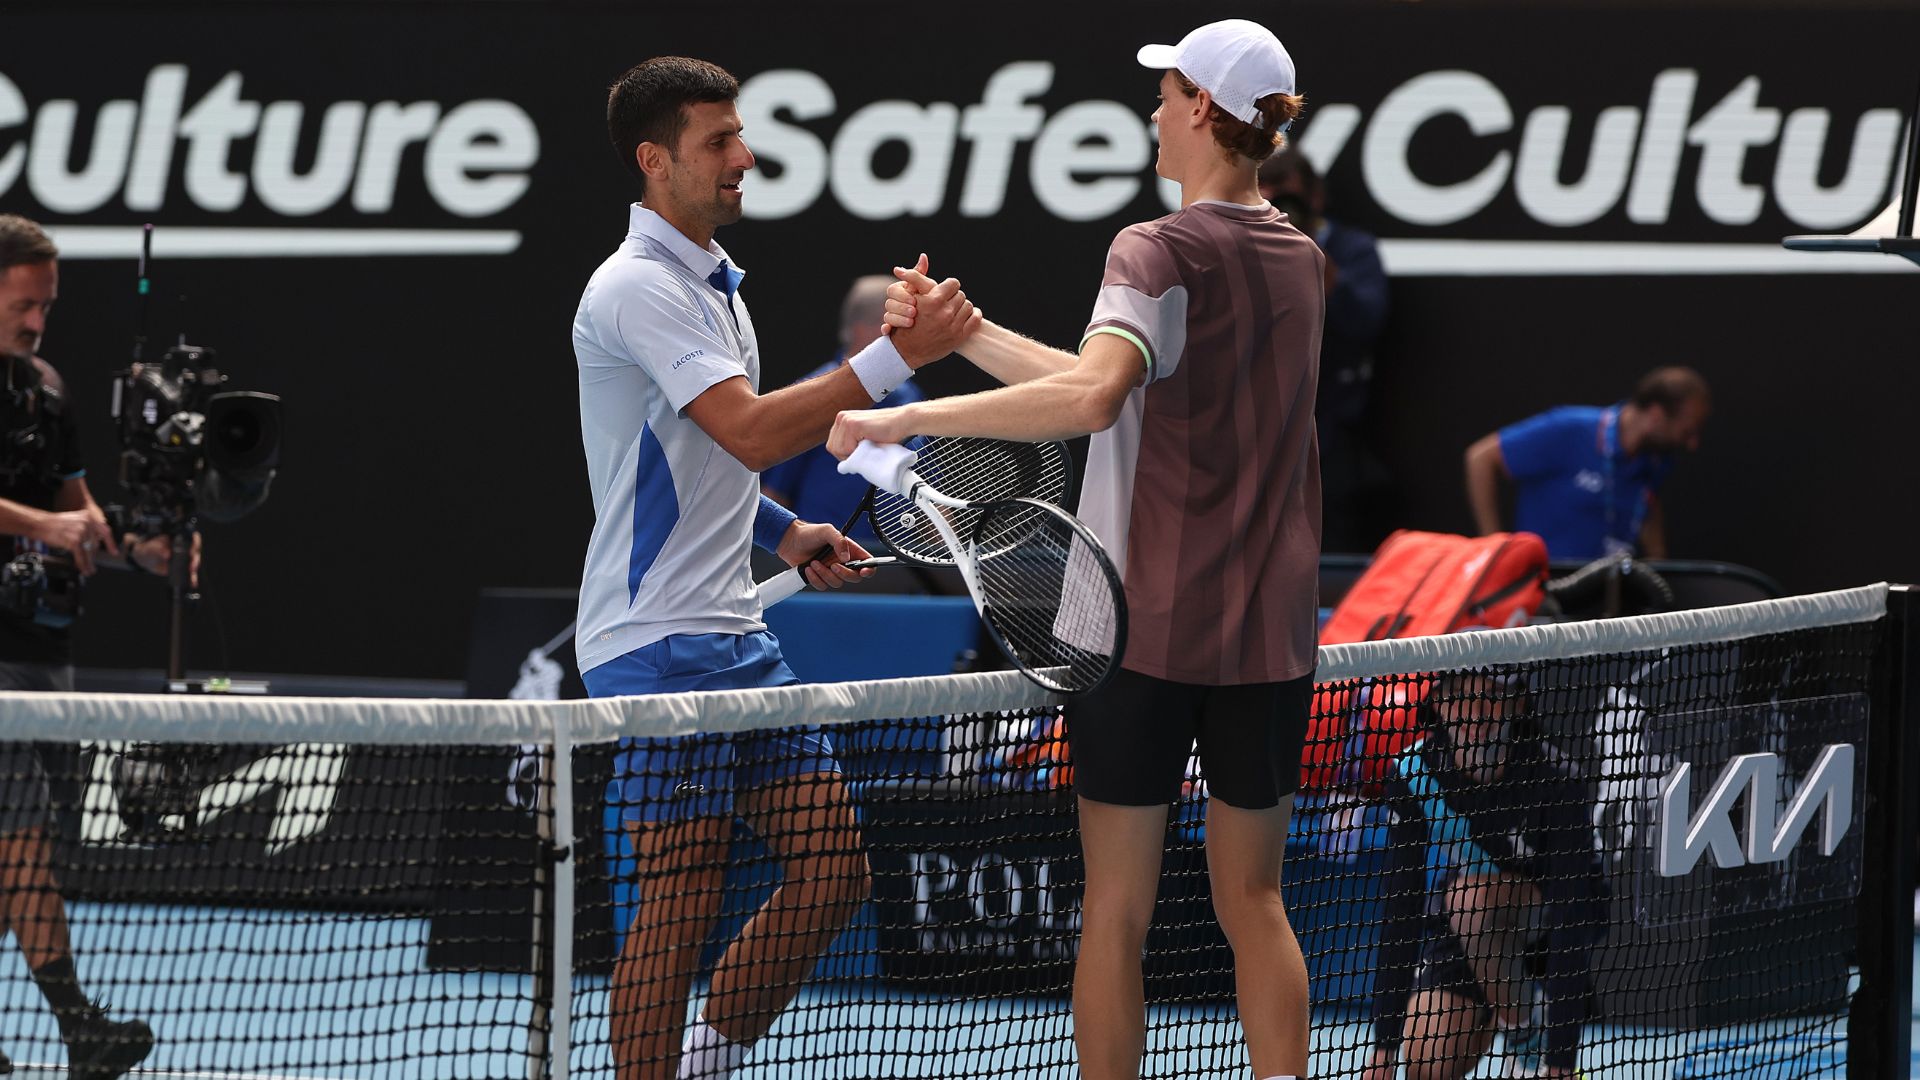 Djokovic cumprimentando Sinner após semifinal do Australian Open (Crédito: Getty Images)